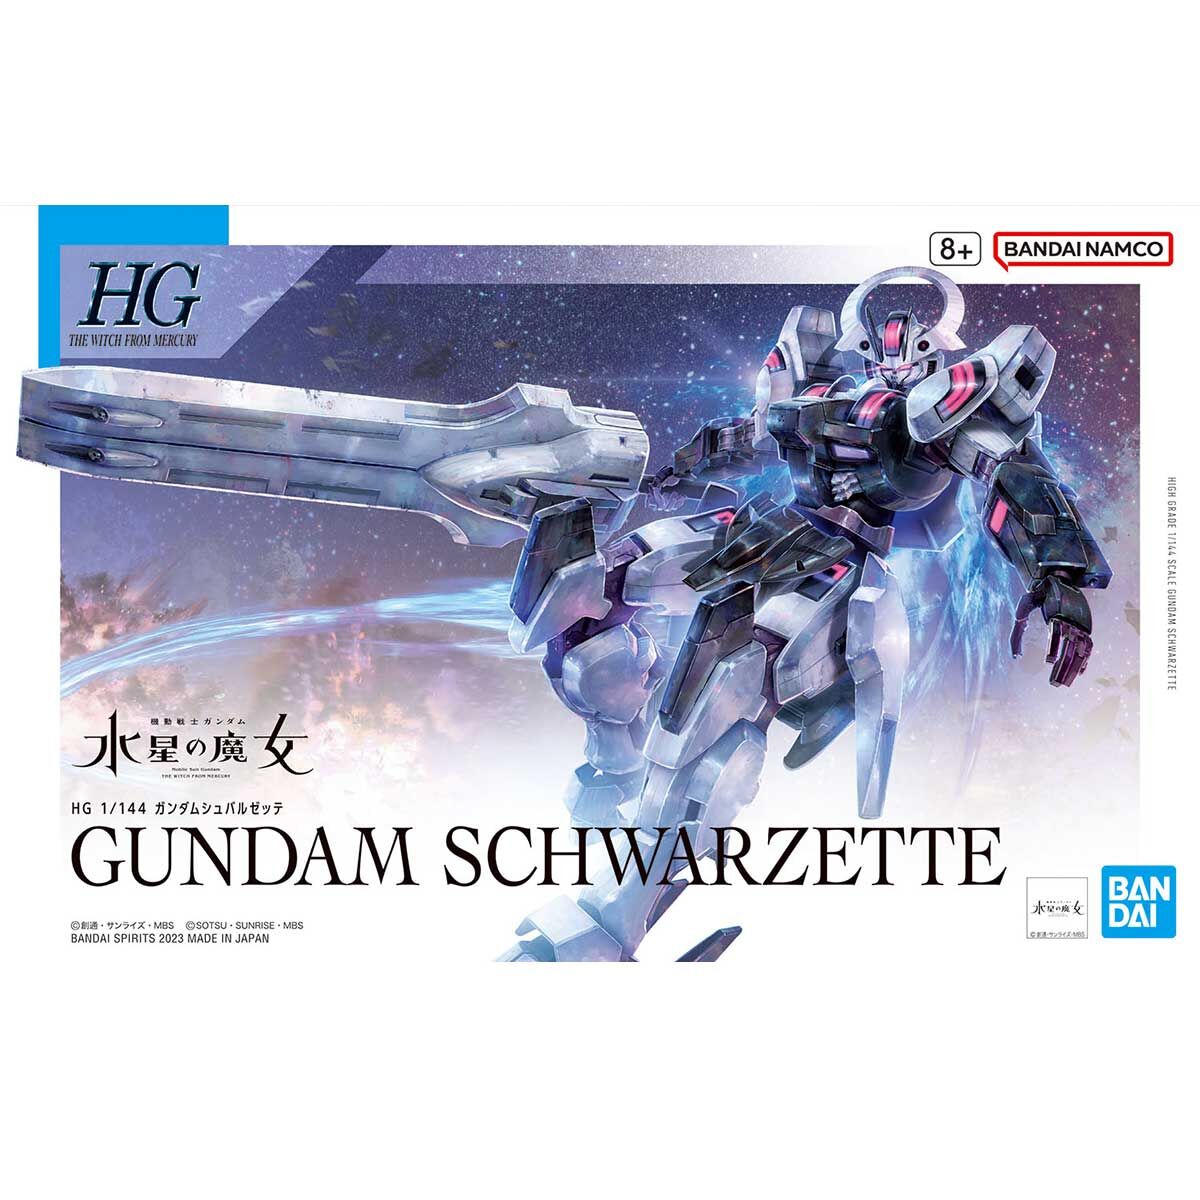 MDX-0003 Gundam Schwarzette HGTWFM 1/144